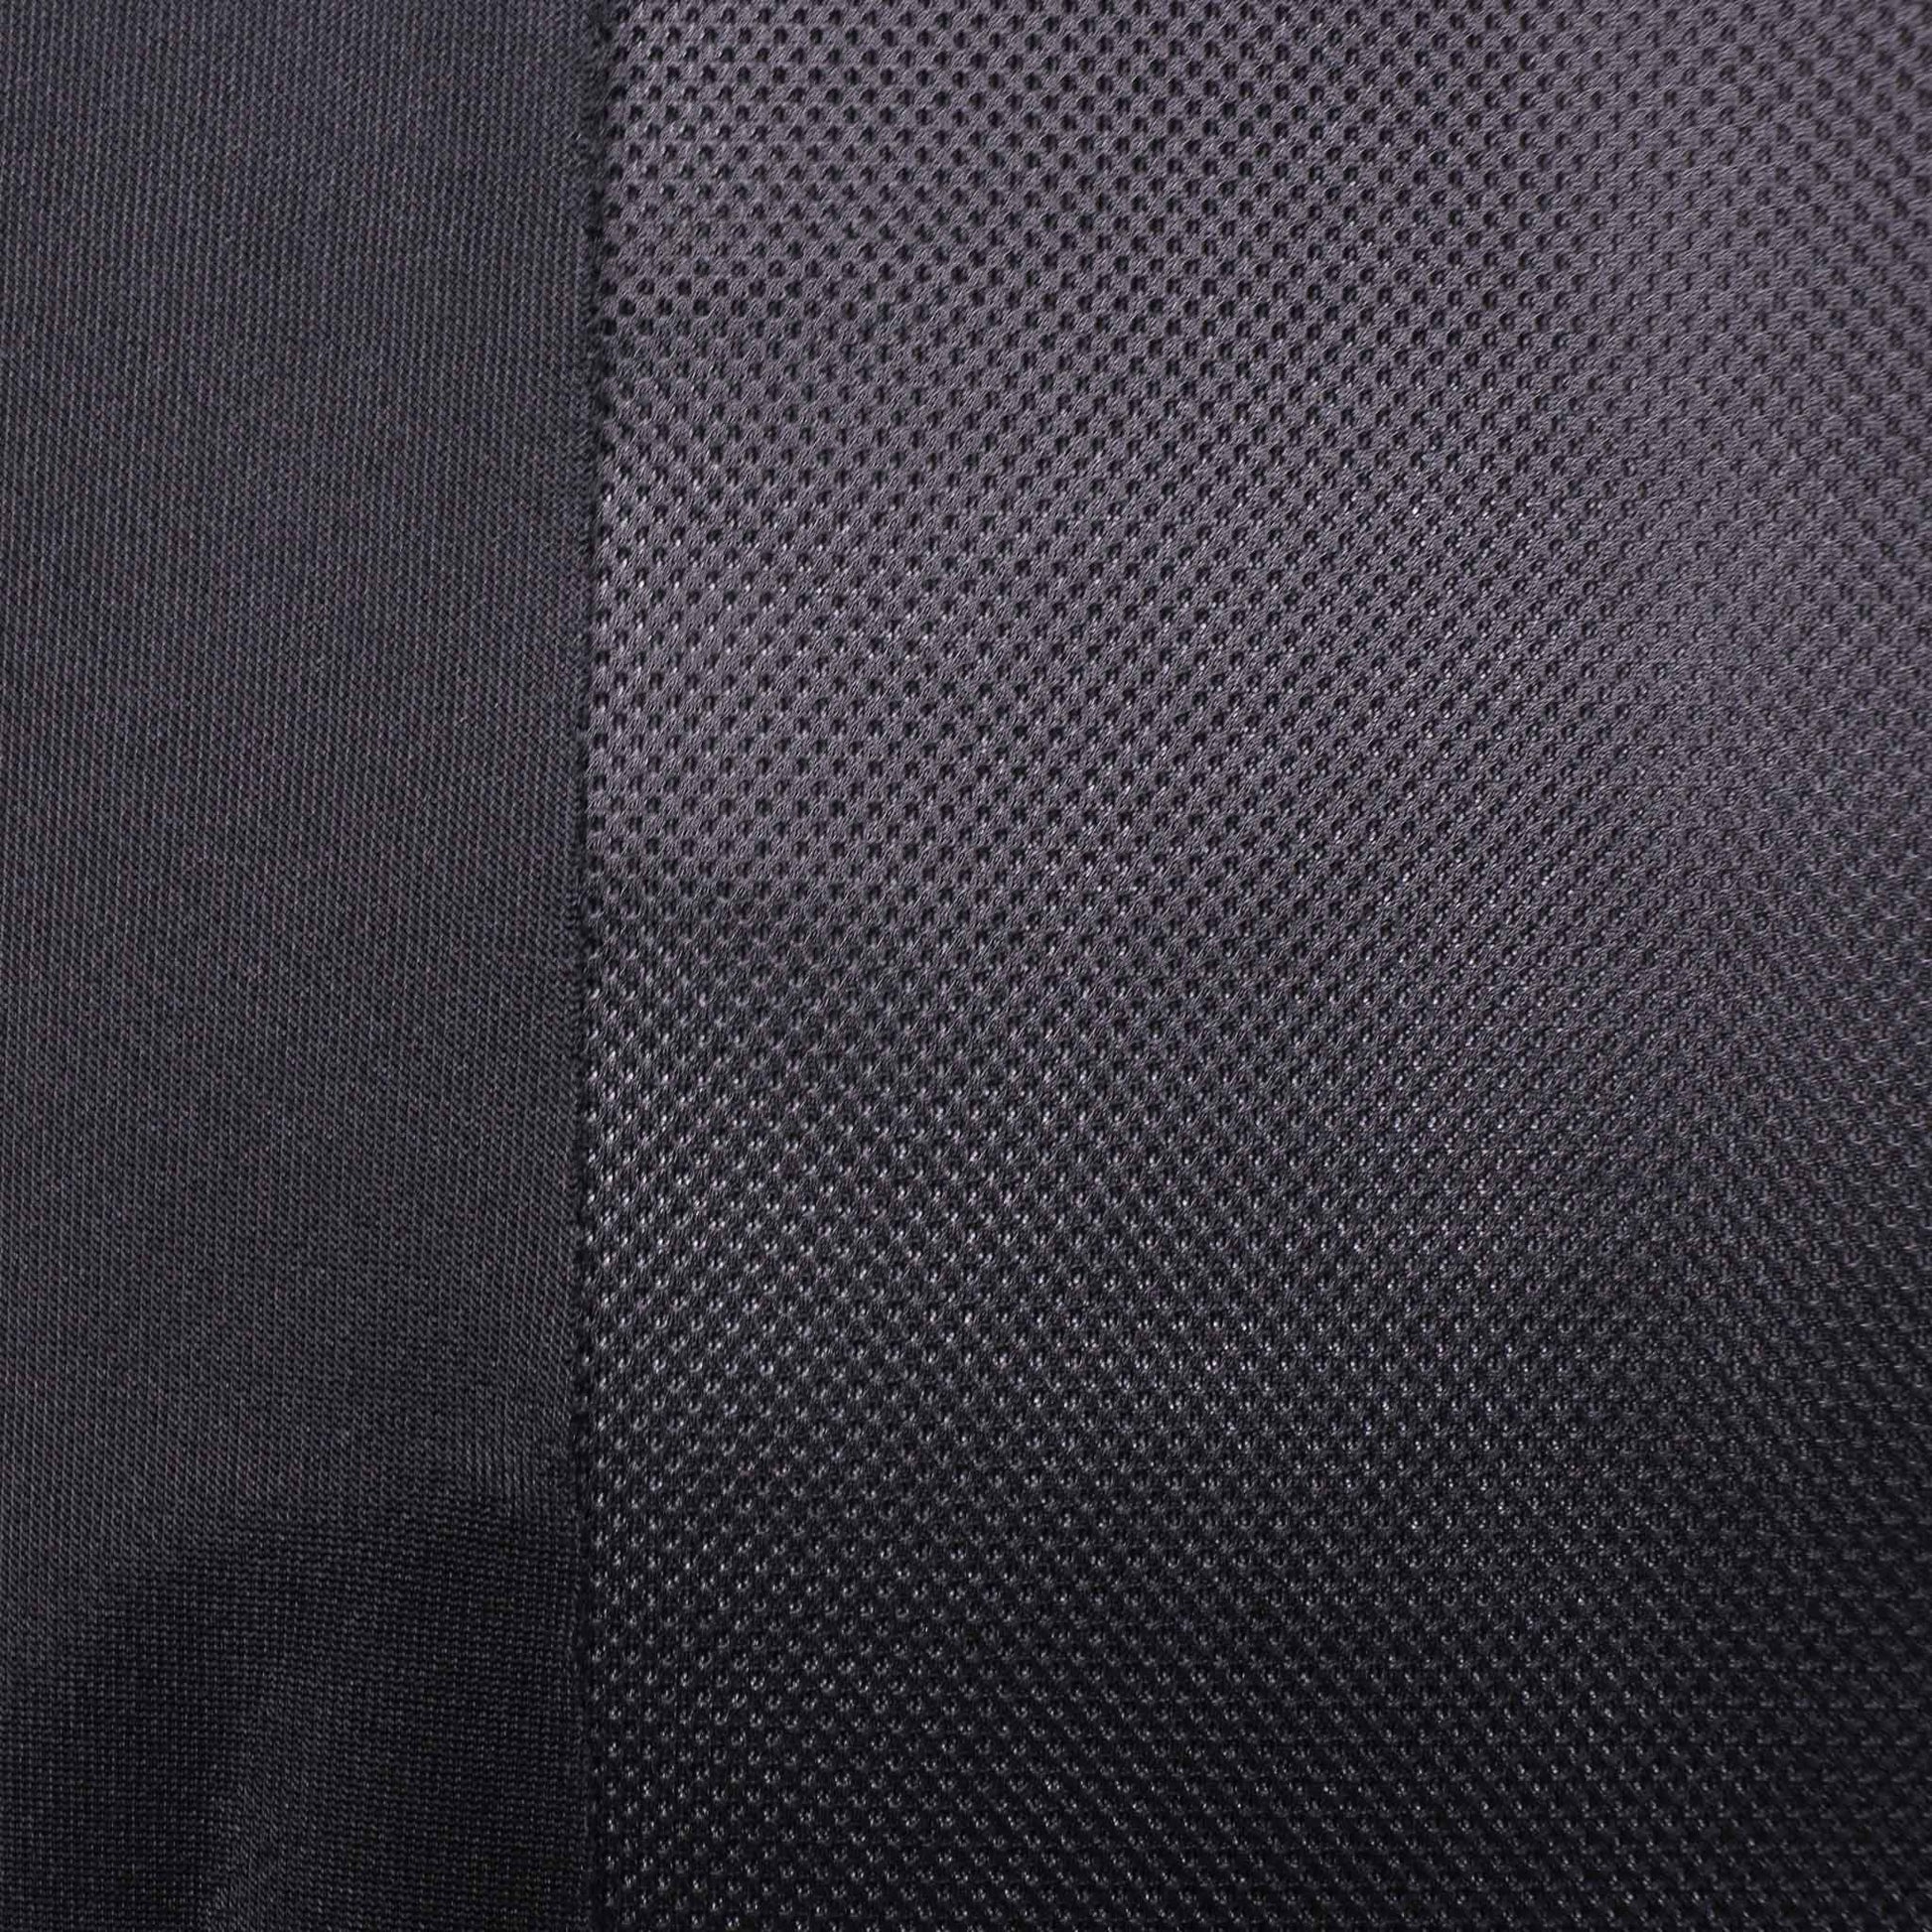 3D mesh spacer airtex sports dress fabric in black